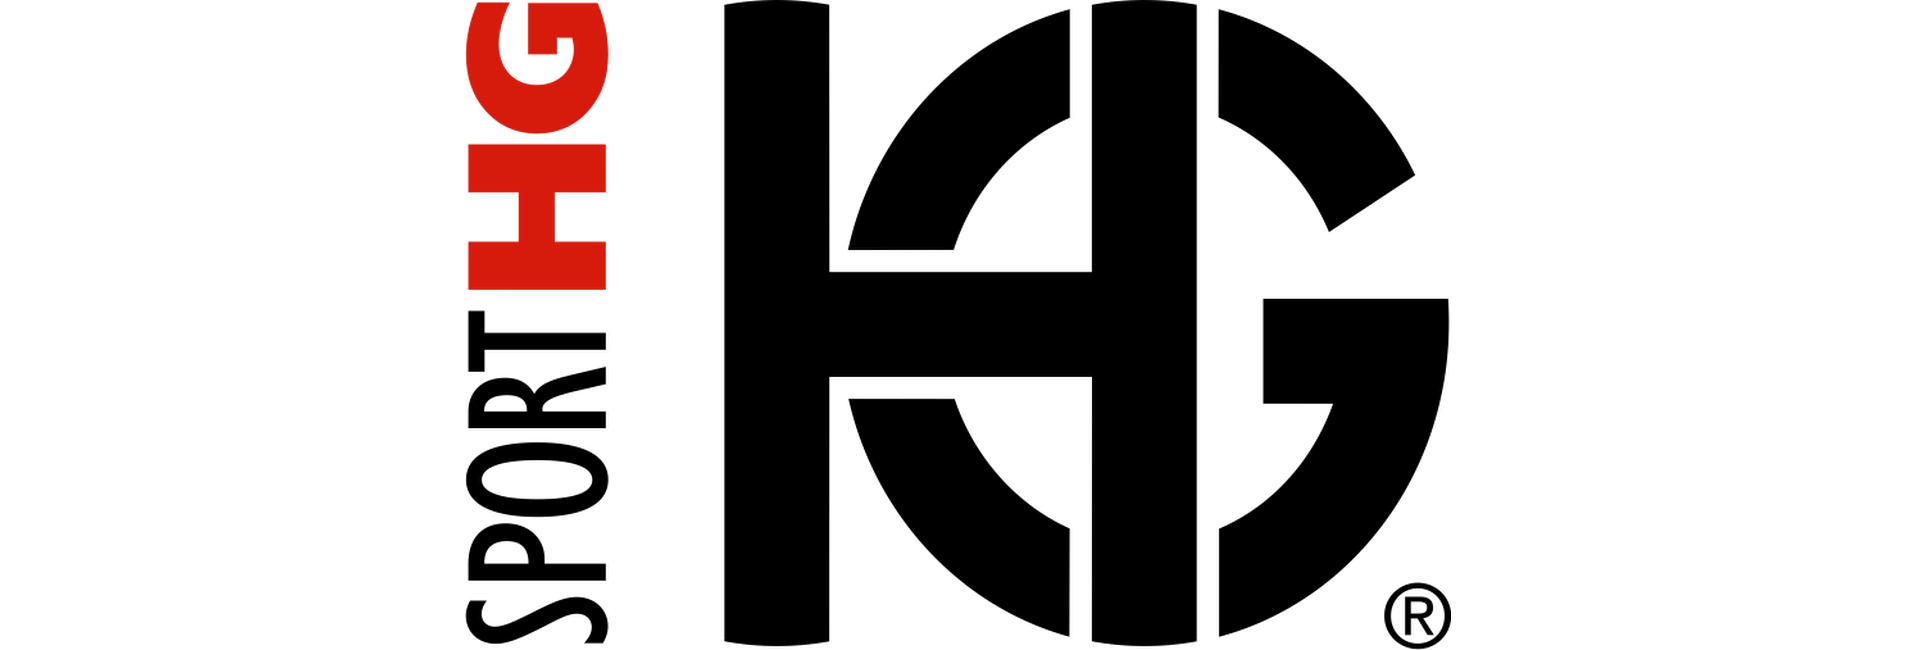 logo two